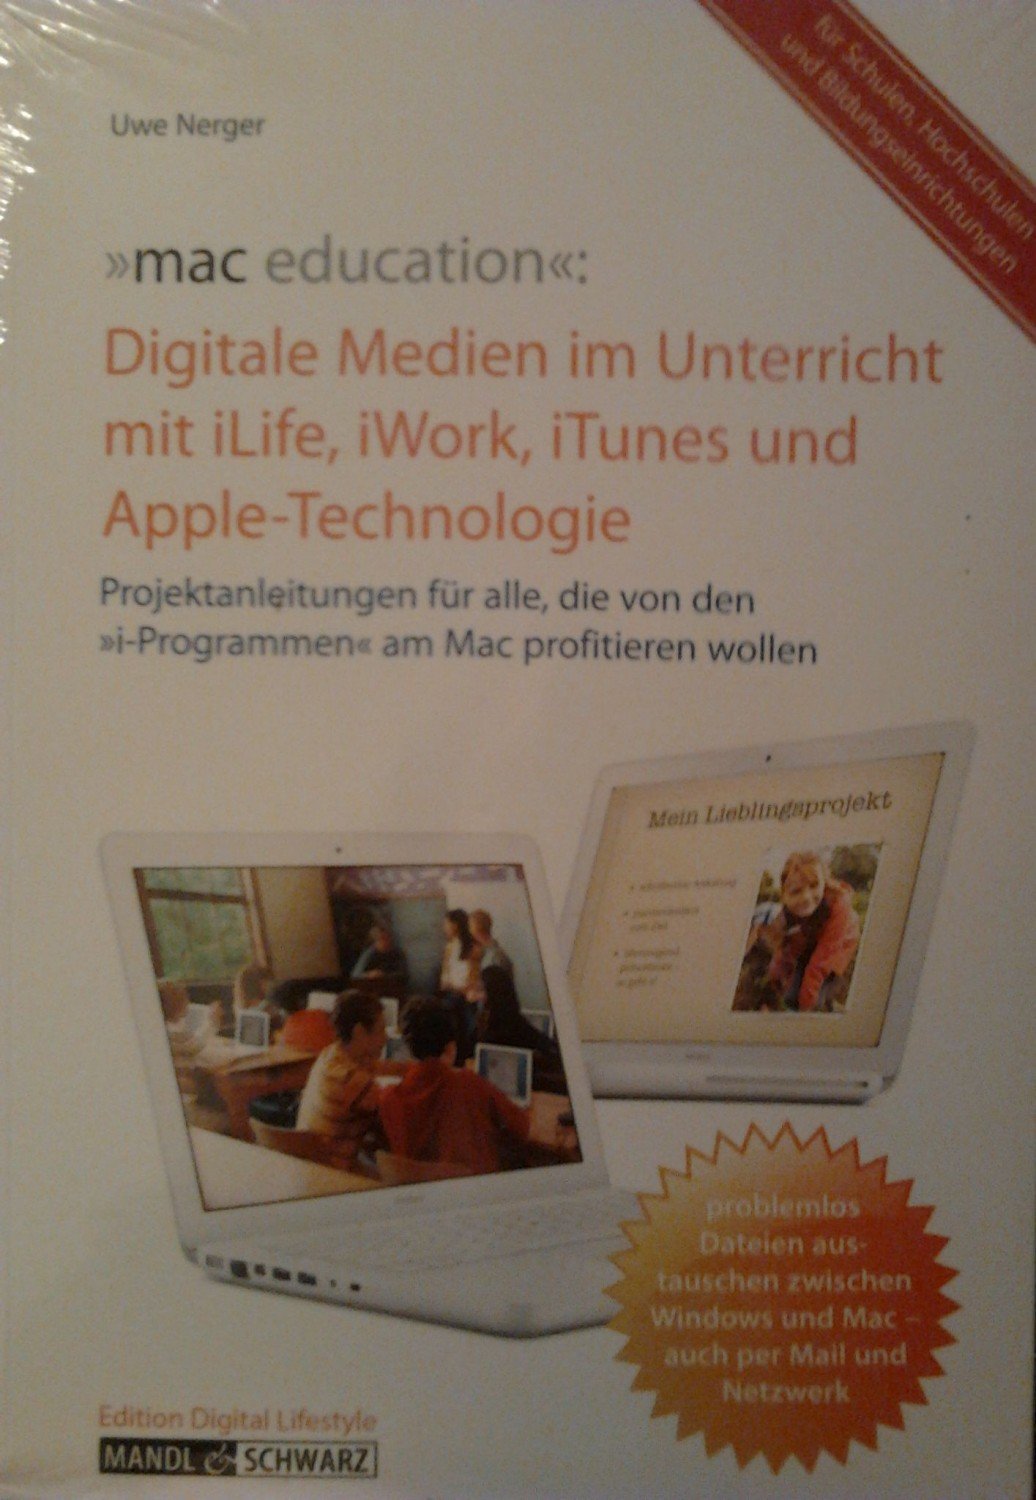 mac education - Digitale Medien erfolgreich einsetzen im Unterricht mit iLife, iWork, iTunes und Apple-Technologie ; Projektanleitungen für alle, die von den 